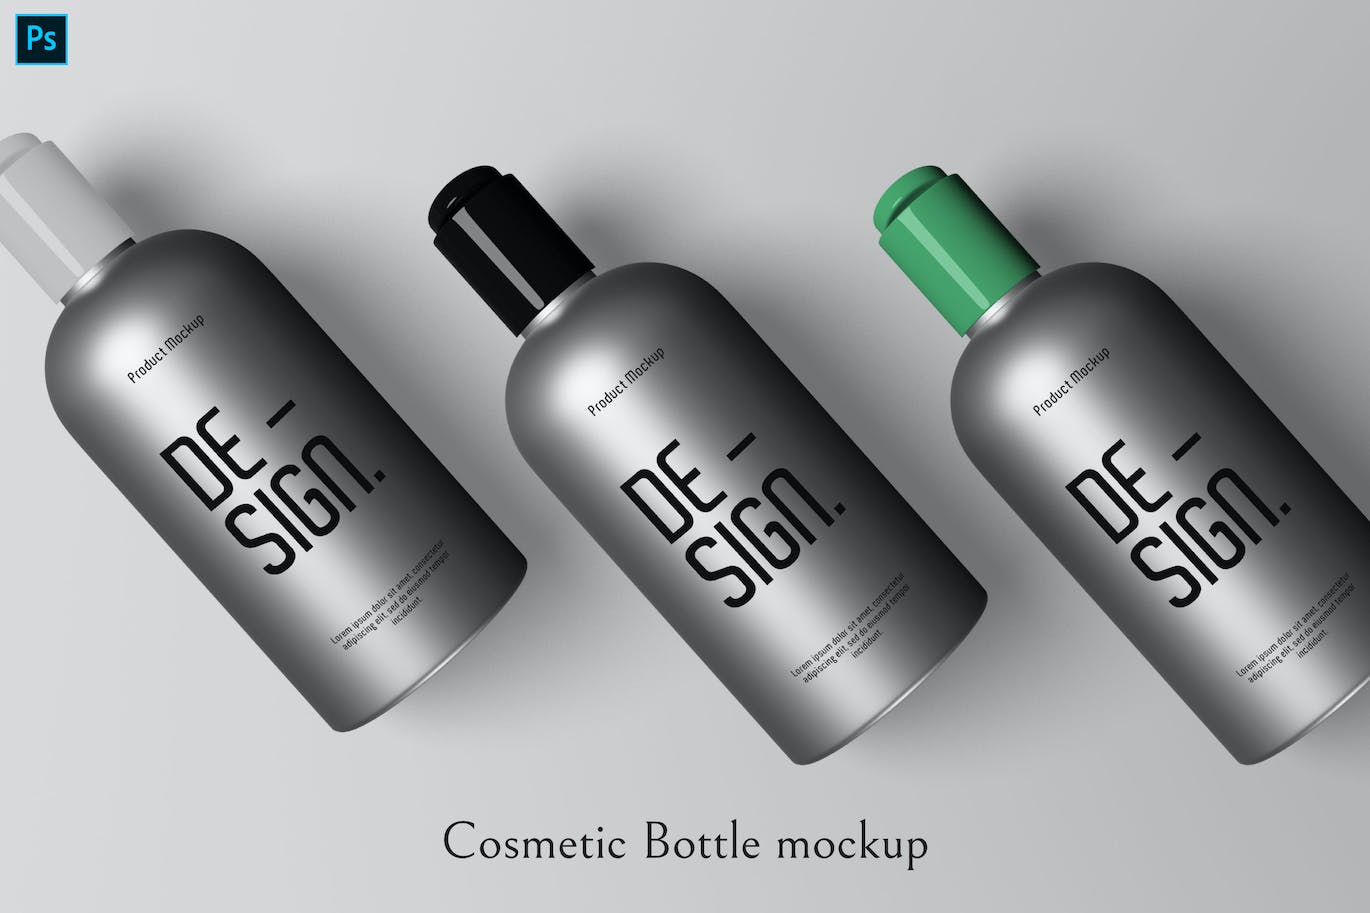 化妆品瓶包装品牌展示样机 Cosmetic Bottle mockup 样机素材 第1张